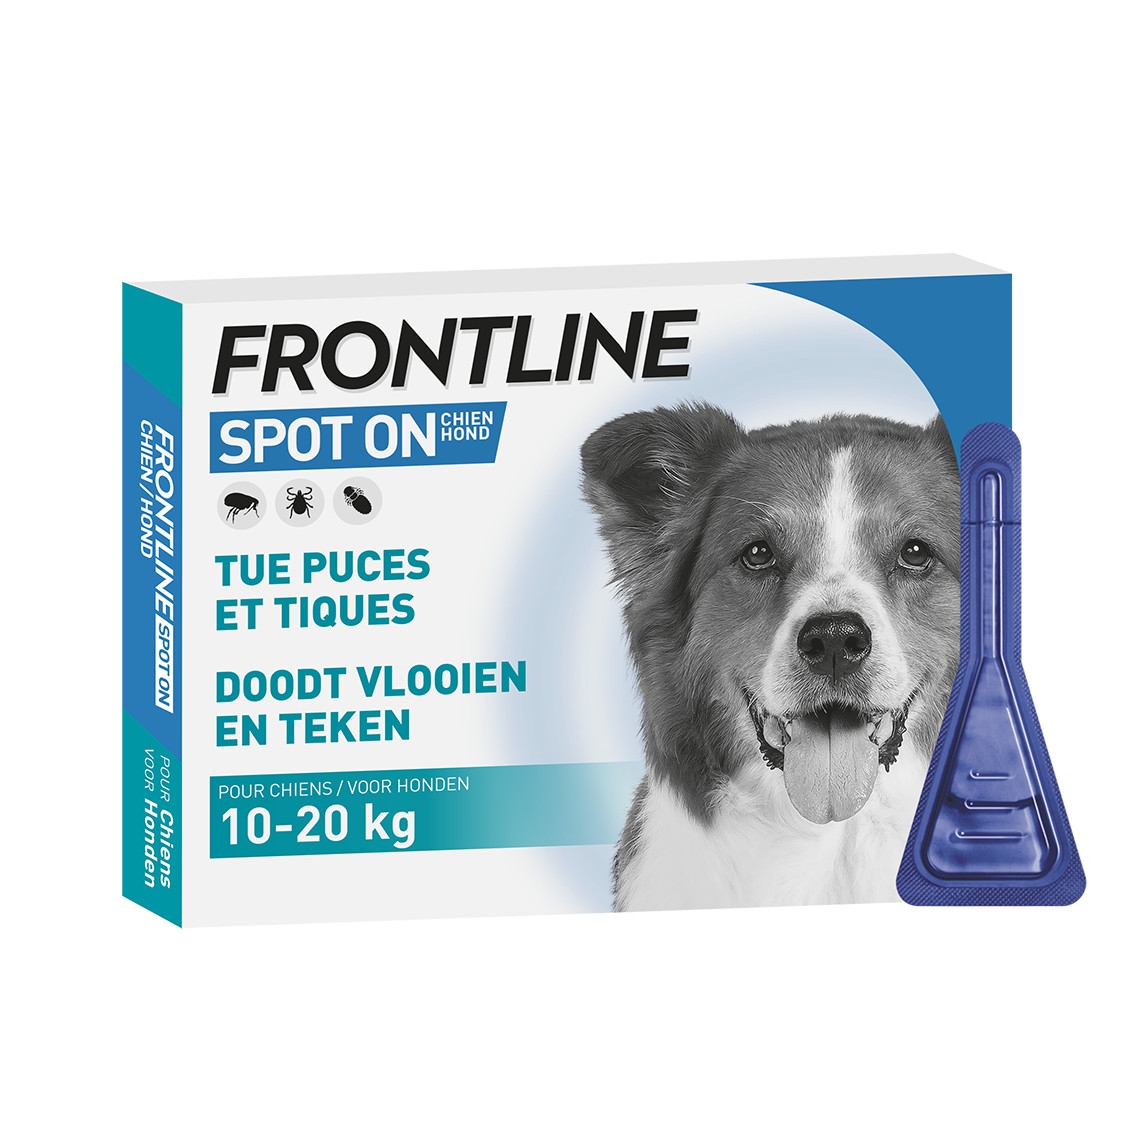 Frontline Spot On hond 10 -20 kg / M